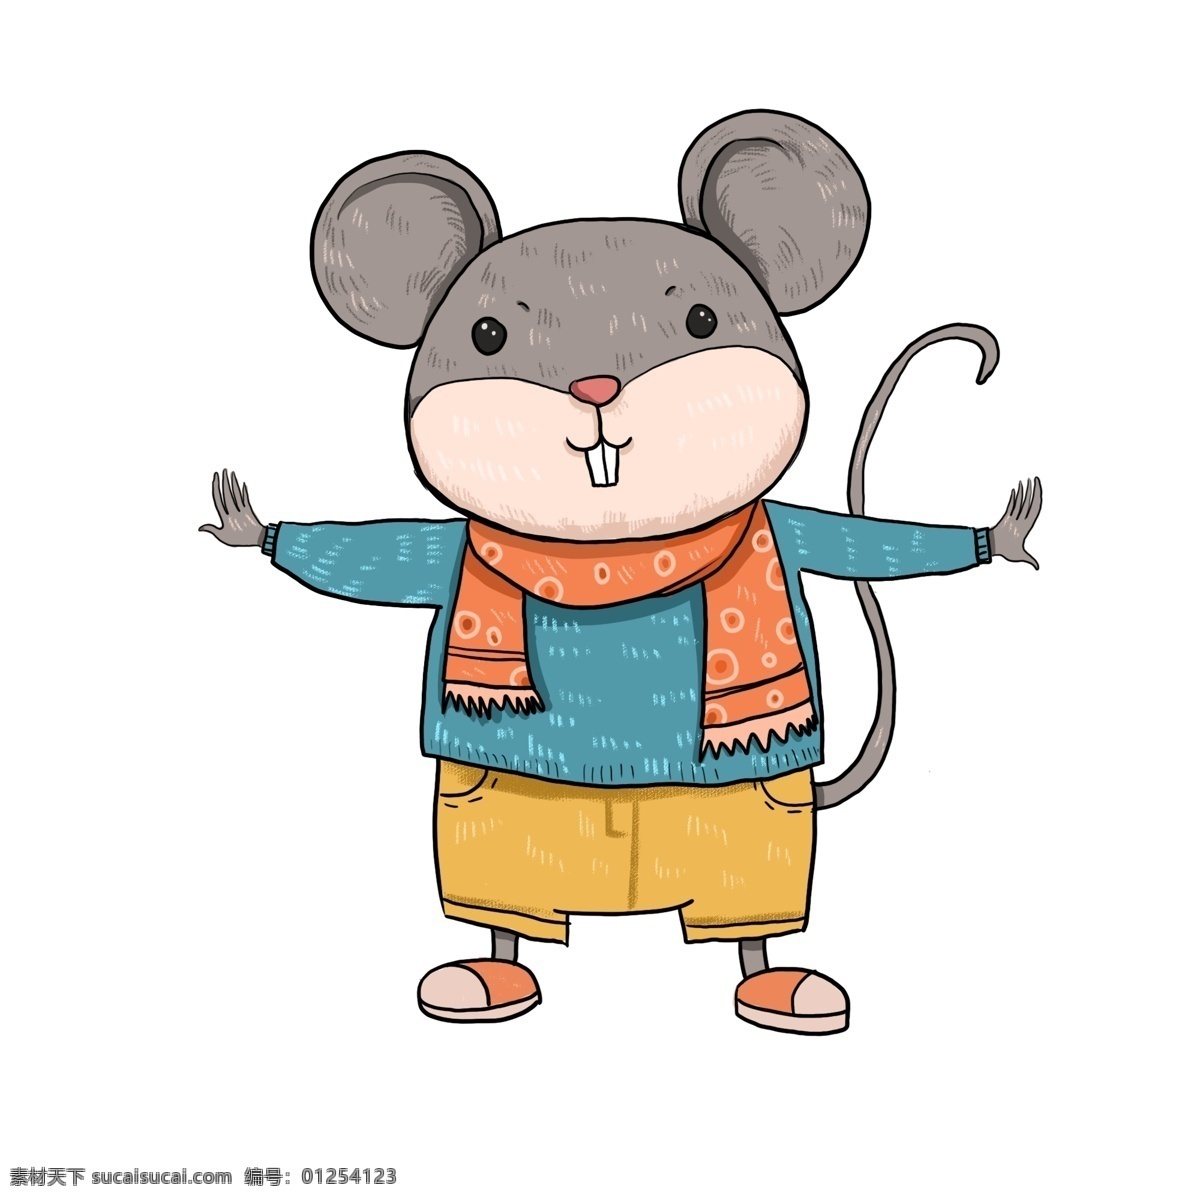 卡通鼠 卡通老鼠 老鼠 老鼠元素 鼠年 老鼠素材 老鼠插画 新年老鼠 特辑 招贴设计